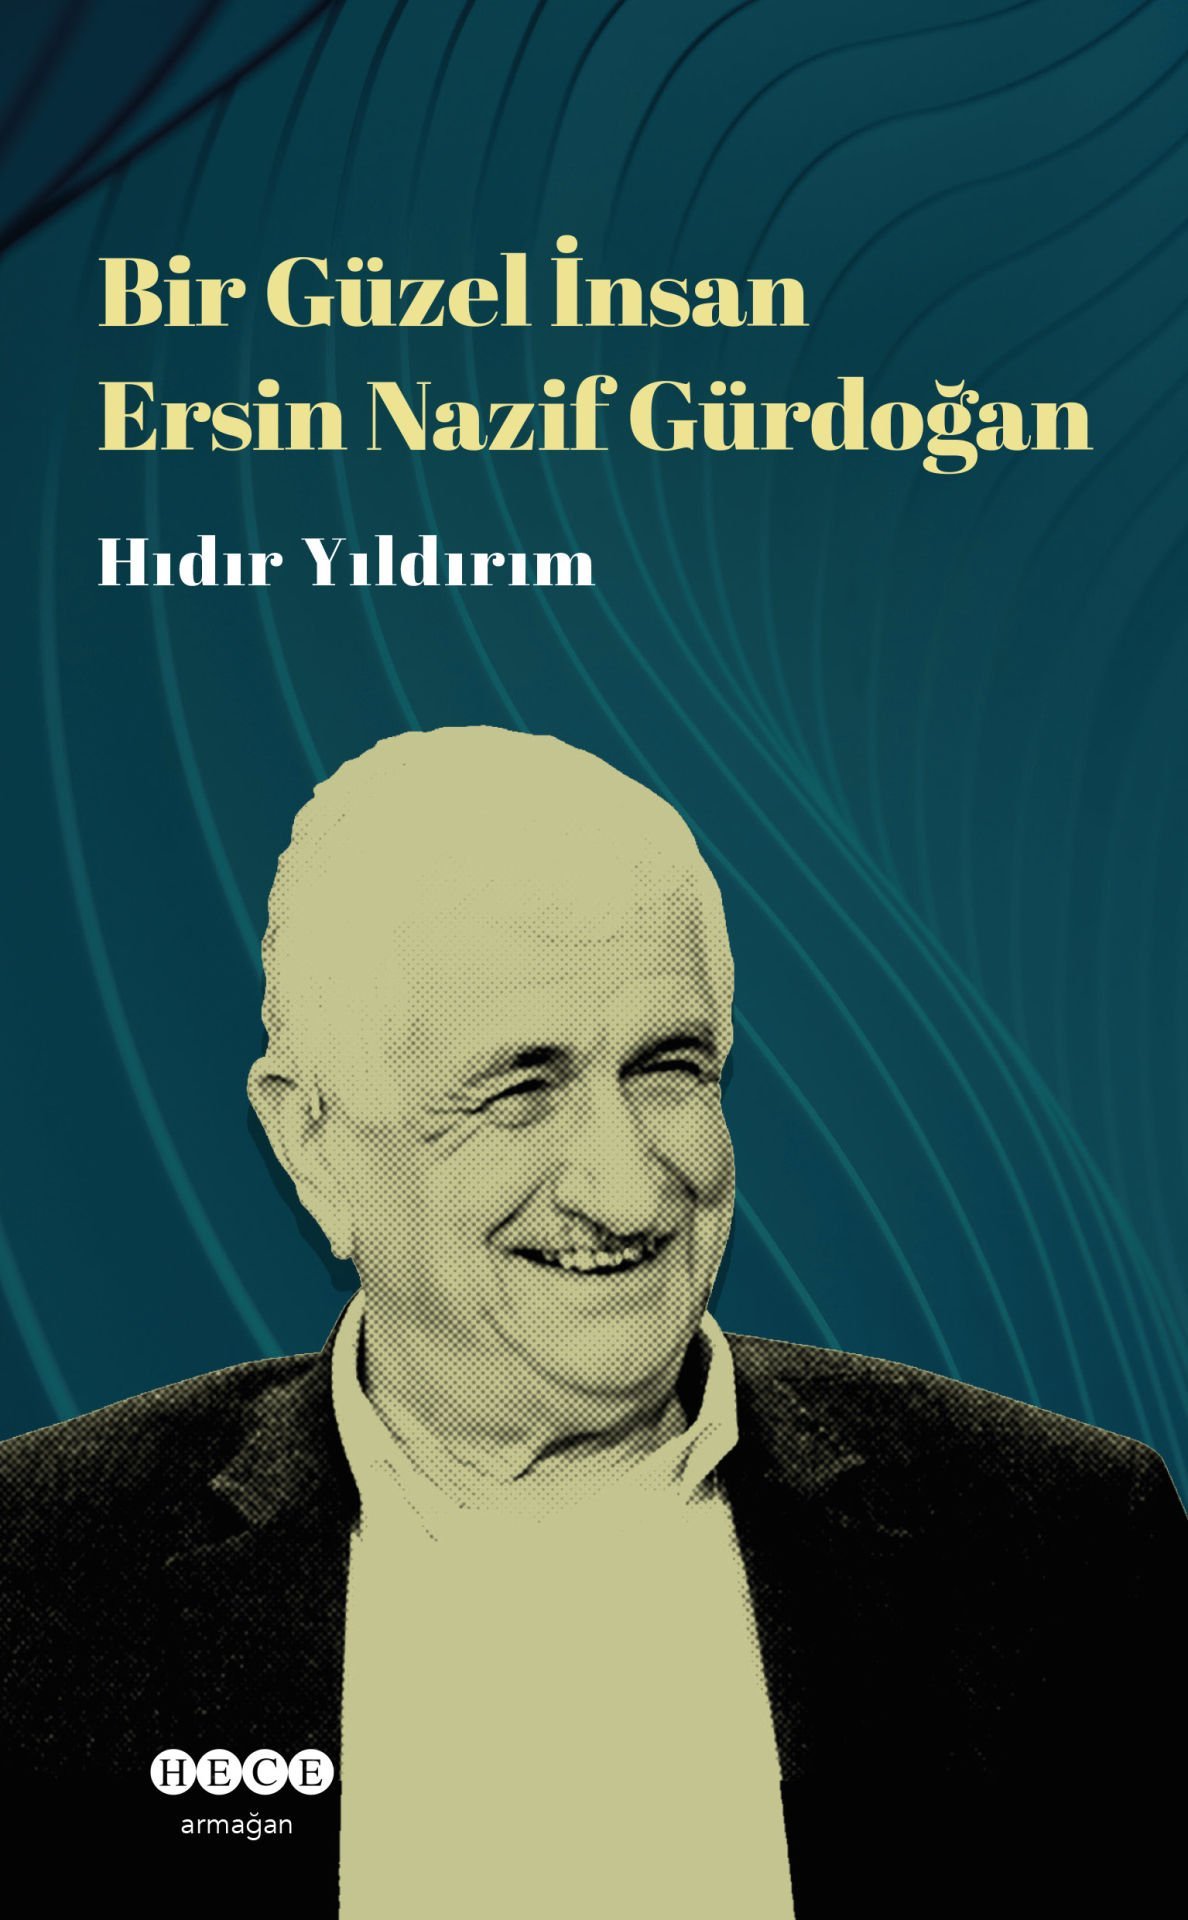 Bir Güzel İnsan 'Ersin Nazif Gürdoğan'